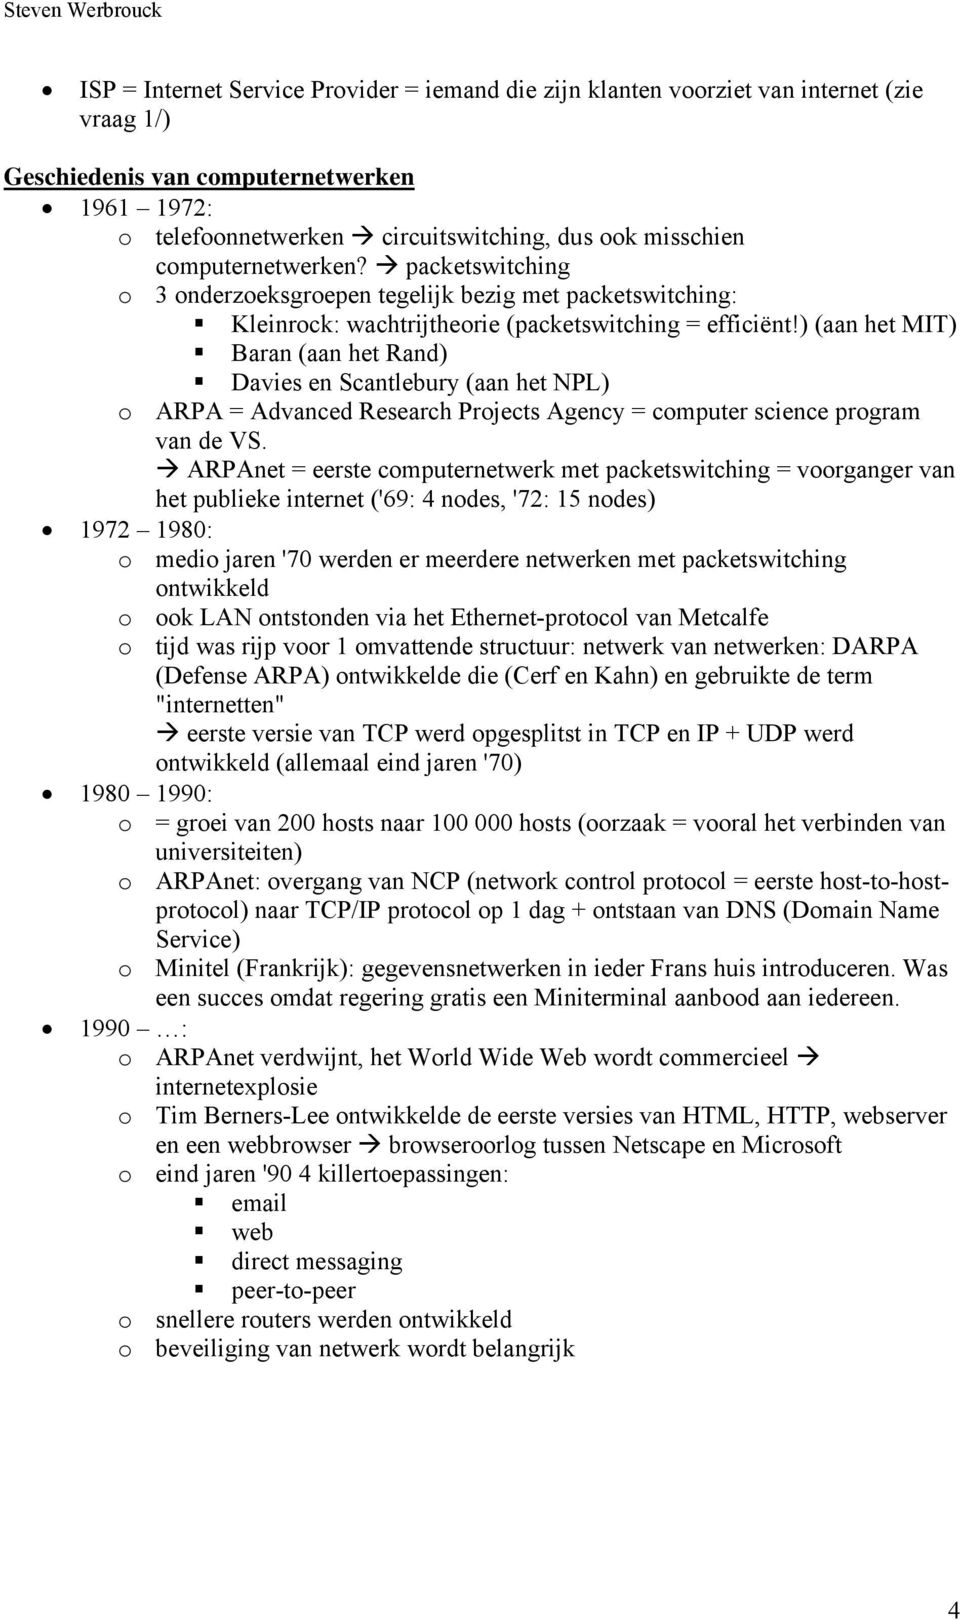 ) (aan het MIT) Baran (aan het Rand) Davies en Scantlebury (aan het NPL) o ARPA = Advanced Research Projects Agency = computer science program van de VS.